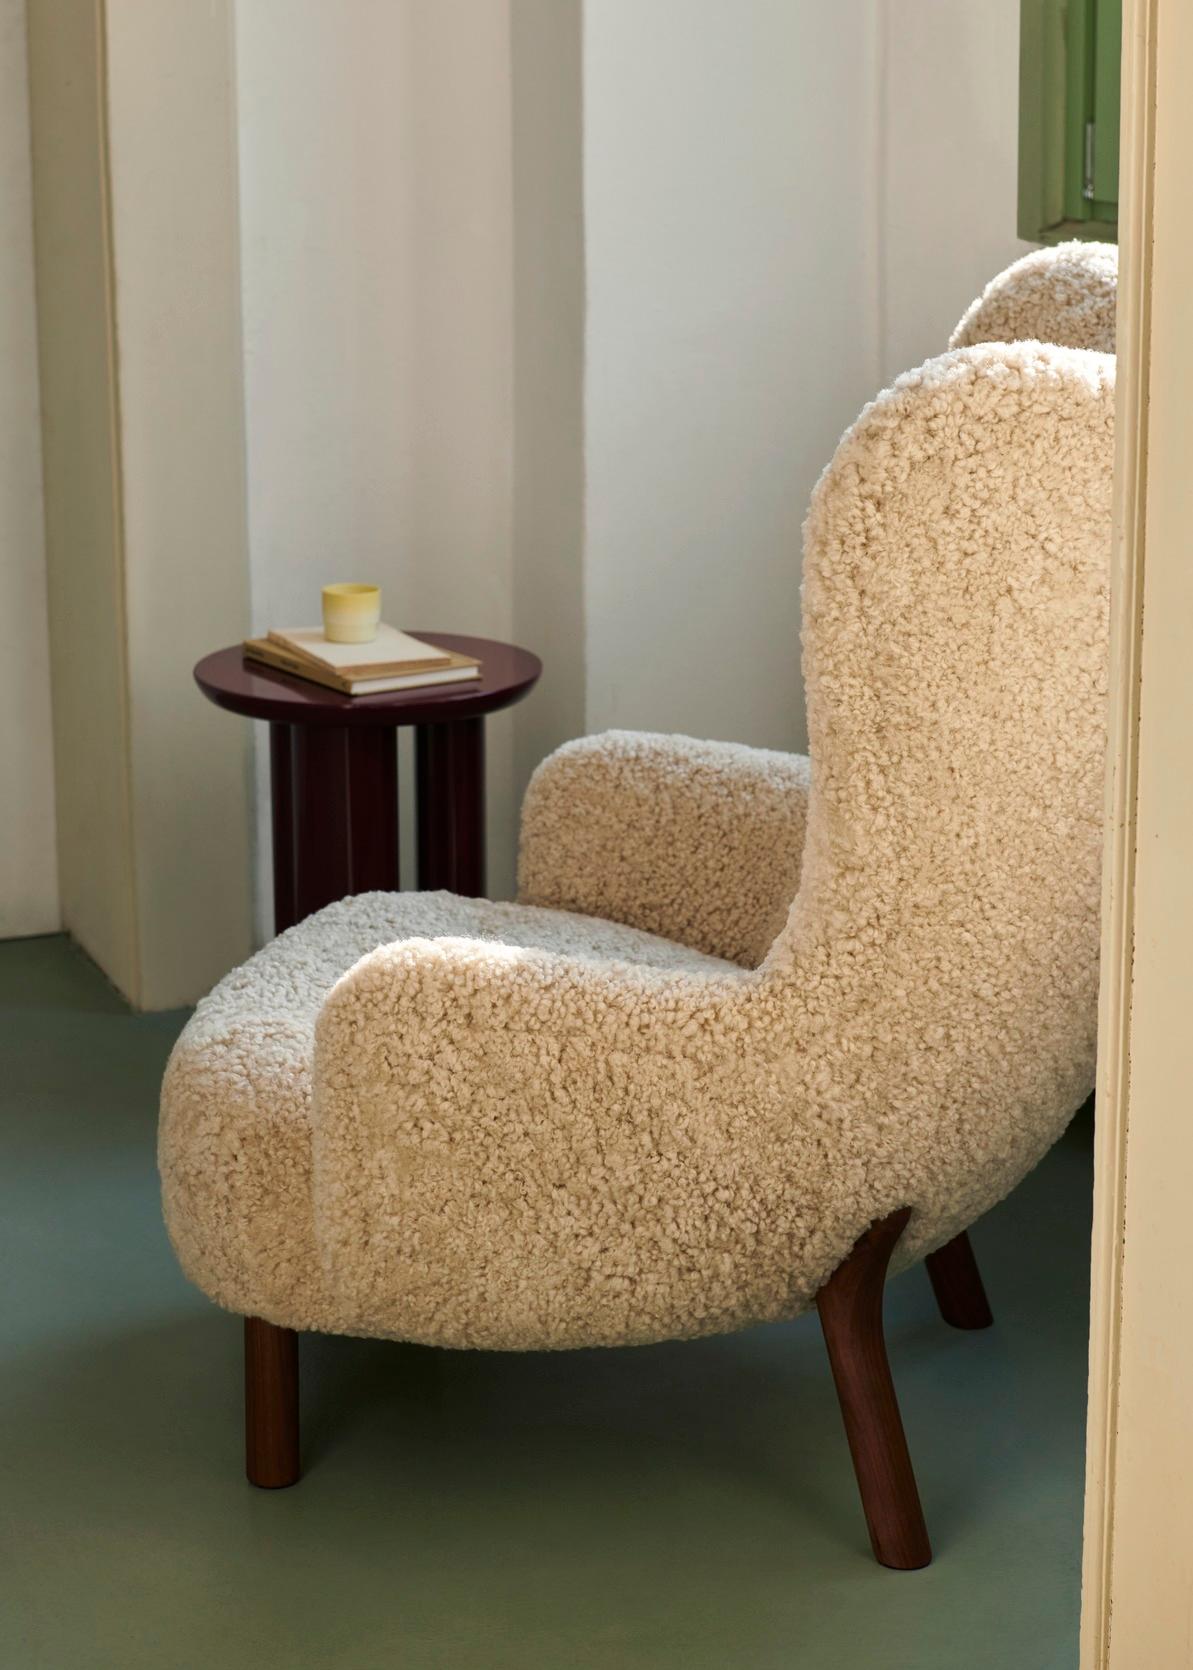 Nach einem Originalentwurf des dänischen Designers Viggo Boesen aus dem Jahr 1938 ist Petra ein Loungesessel mit hochgestellter, geflügelter Rückenlehne und unvergleichlichem Komfort. 
Der Loungesessel Petra folgt auf den großen Erfolg von Little